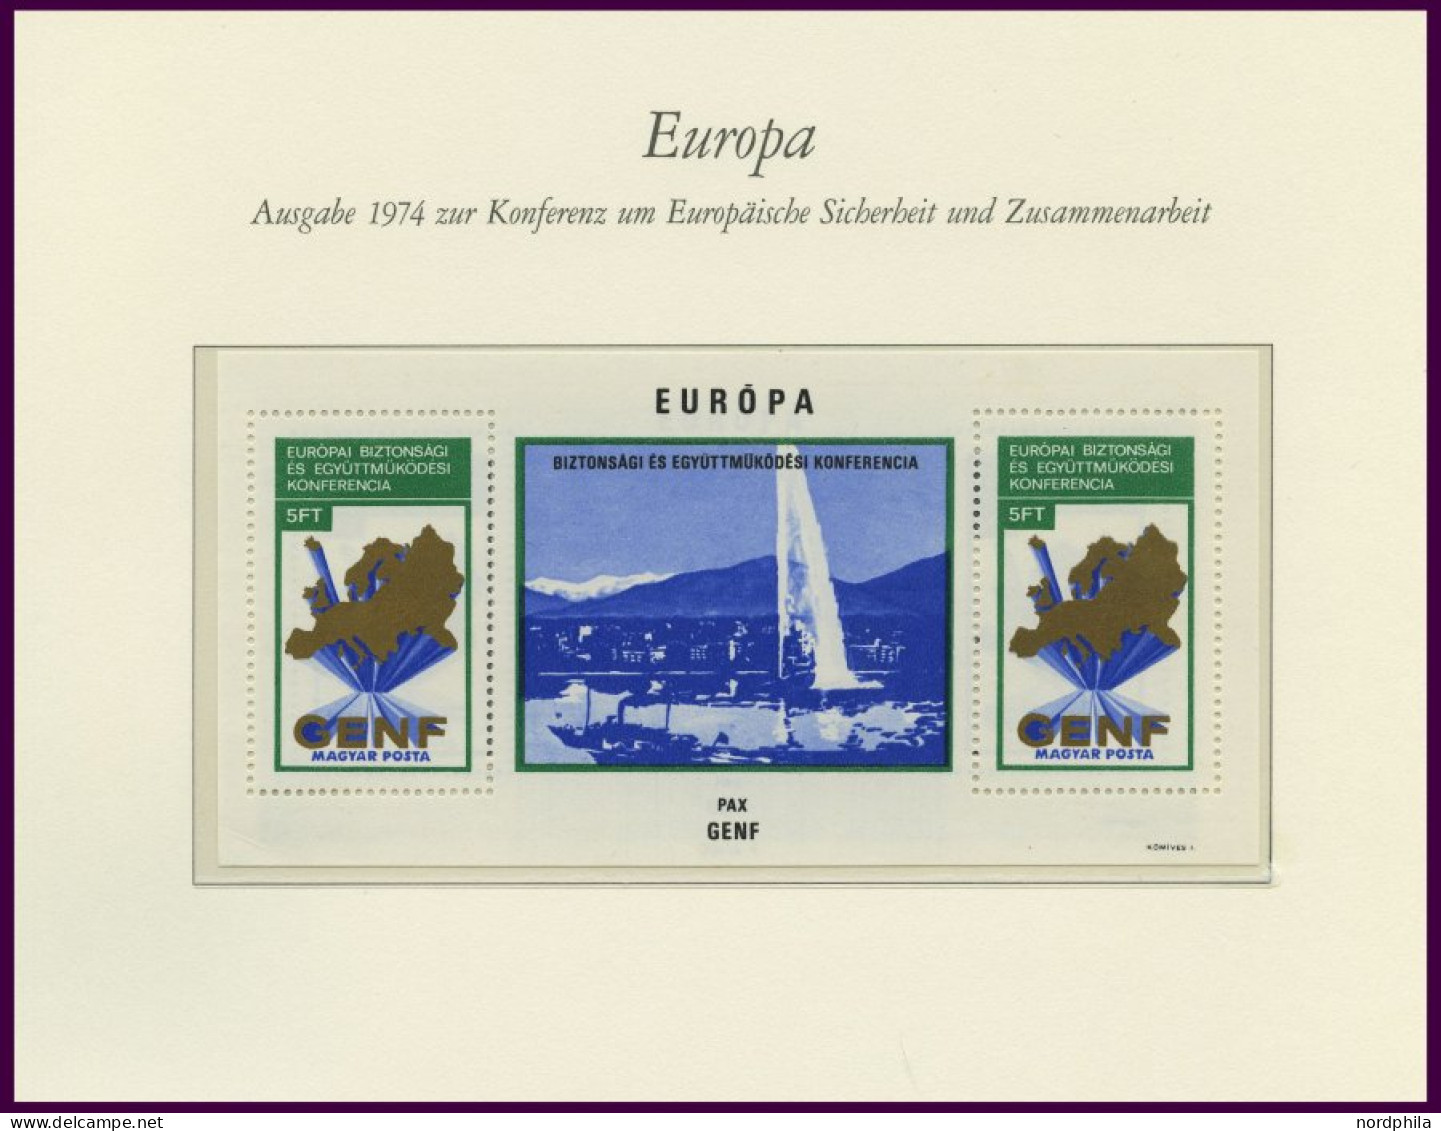 EUROPA UNION , Postfrische Sammlung KSZE Von 1973-83 Auf Borek Falzlosseiten, Mit Bulgarien Bl. 106, Rumänien Bl. 125 Un - Colecciones